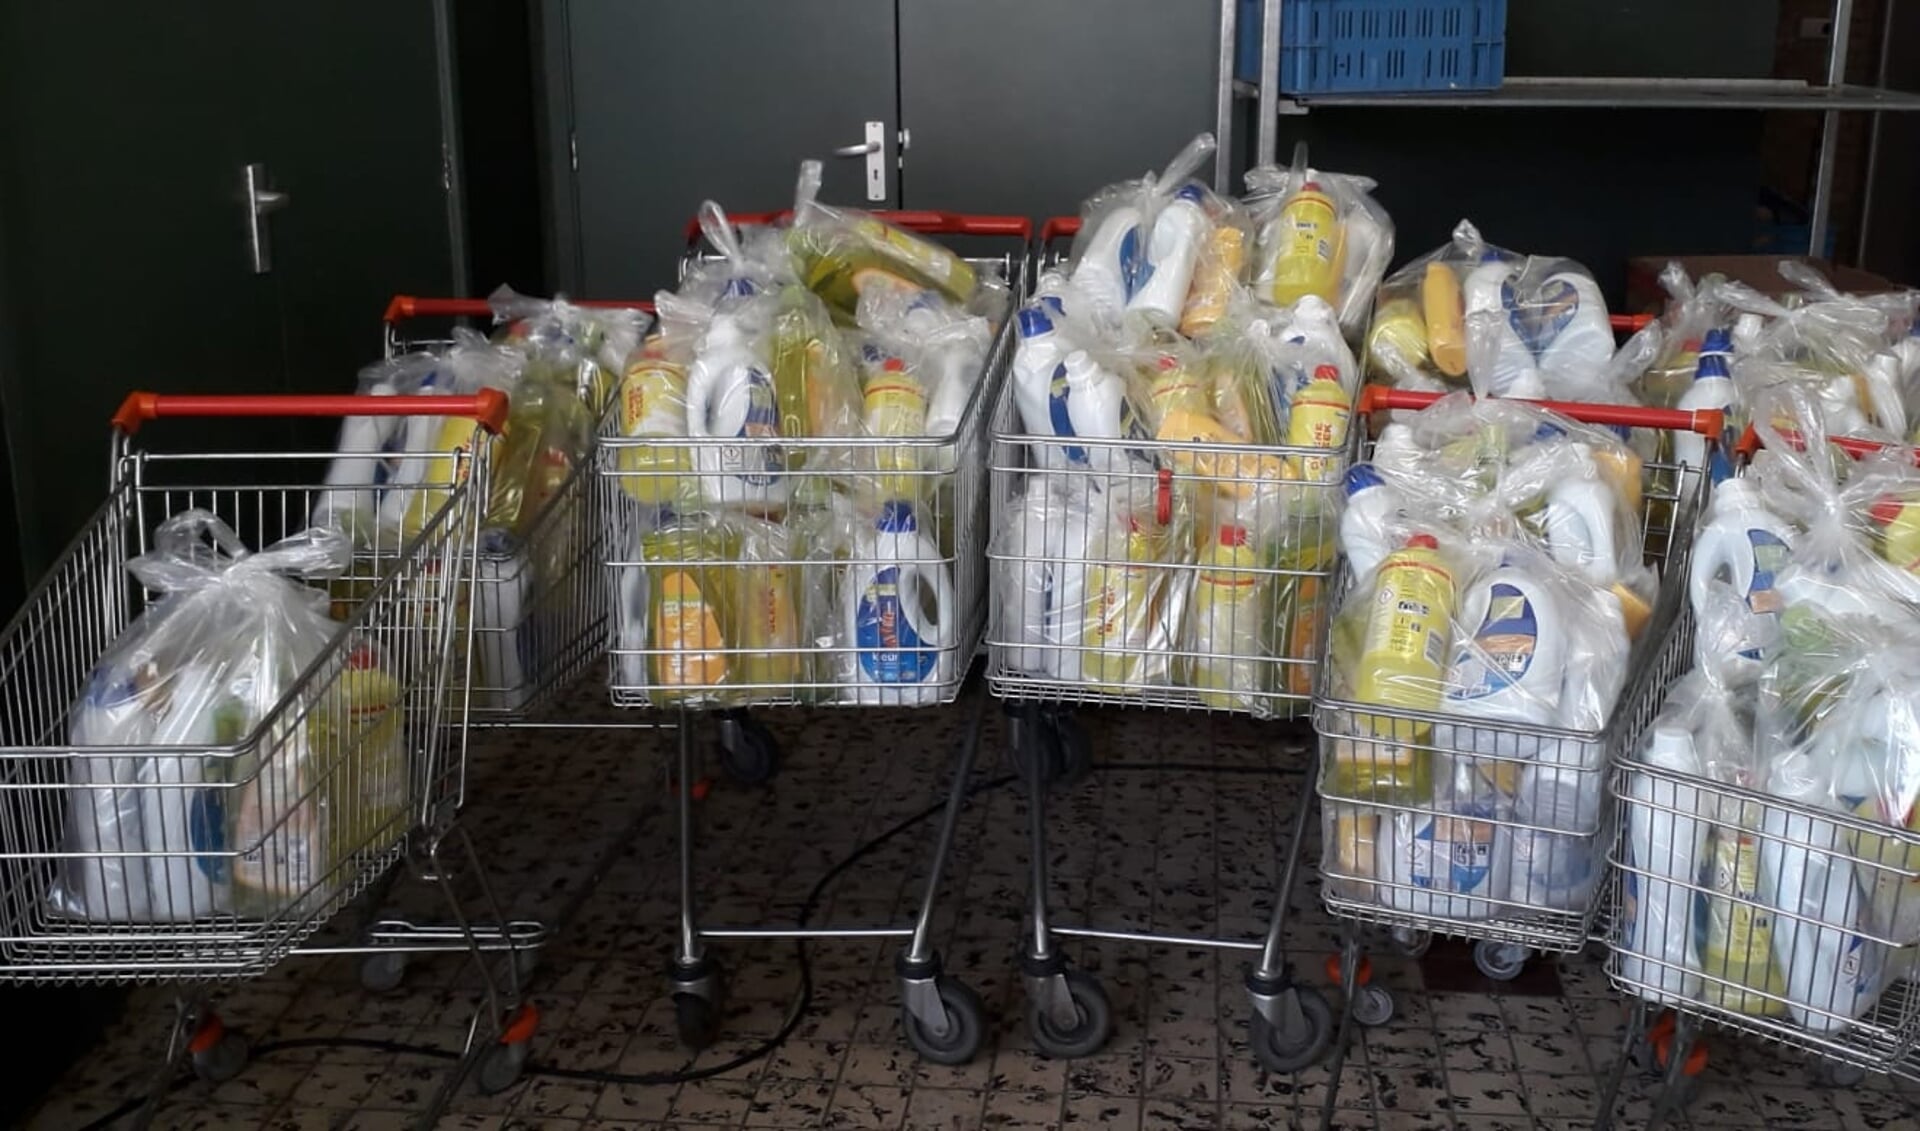 • De pakketten schoonmaakmiddelen voor de Voedselbank in Alblasserdam.